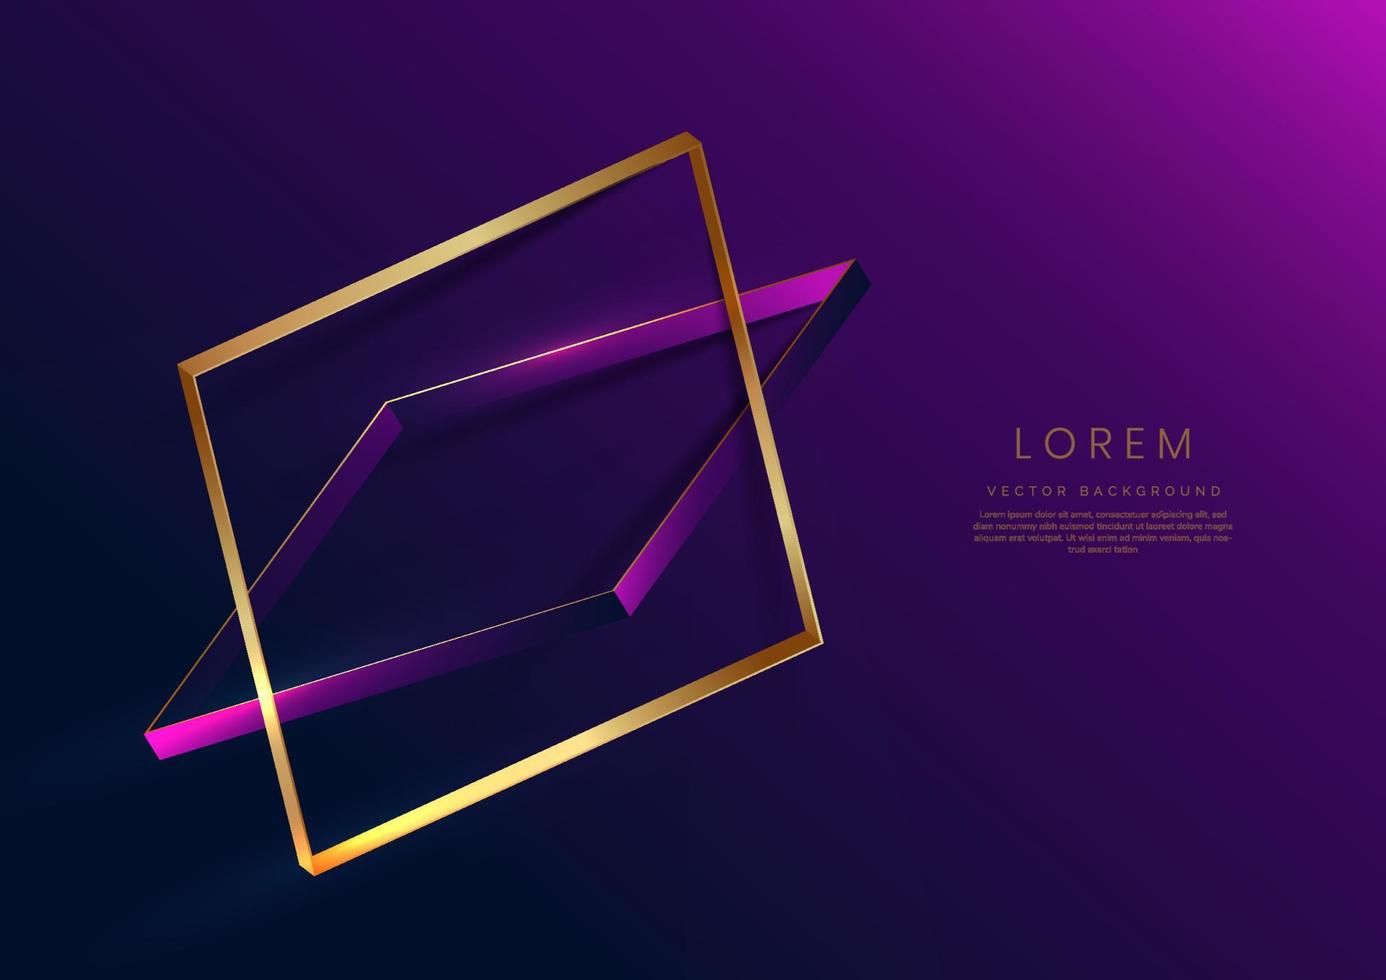 marco cuadrado de oro 3d abstracto sobre fondo púrpura y azul oscuro con efecto de iluminación y brillo con espacio de copia para texto. estilo de diseño de marco cuadrado de lujo. vector